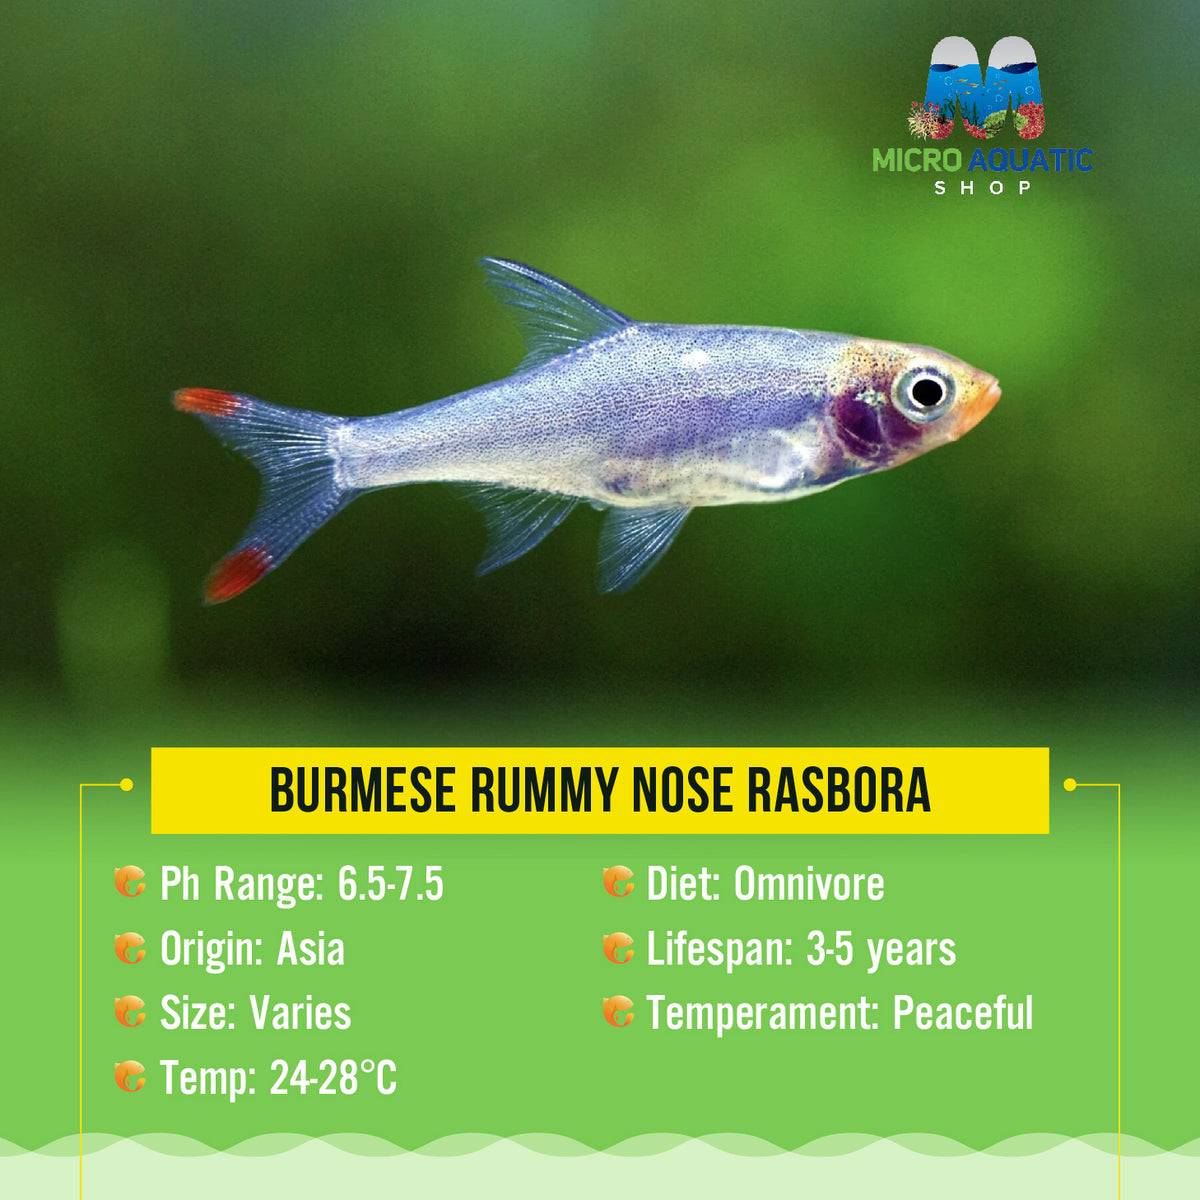 Burmese Rummy Nose Rasbora